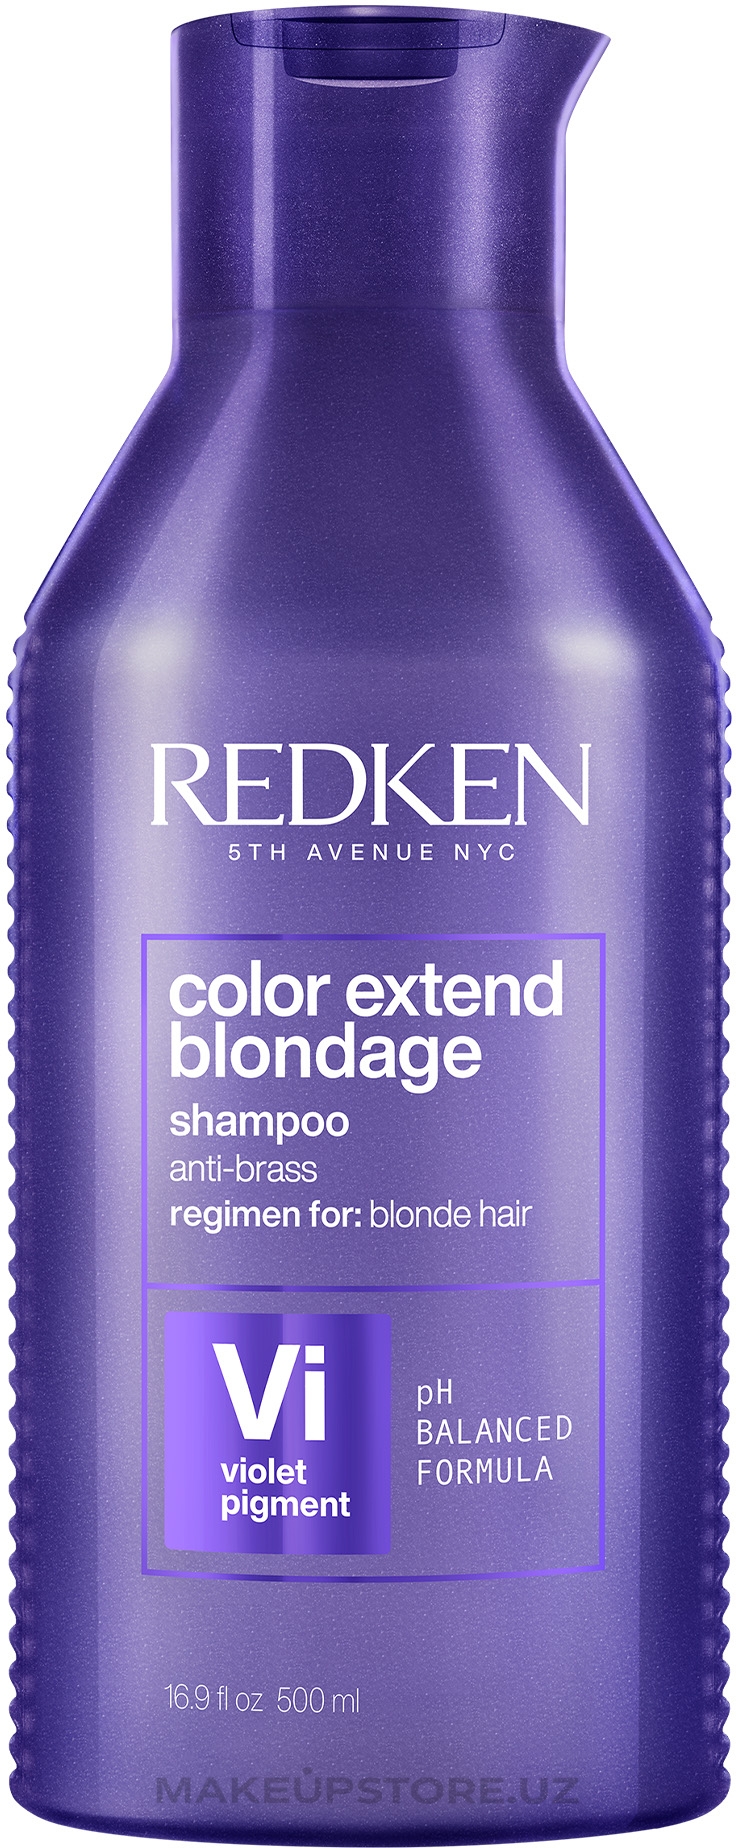 redken szampon color extend blondage